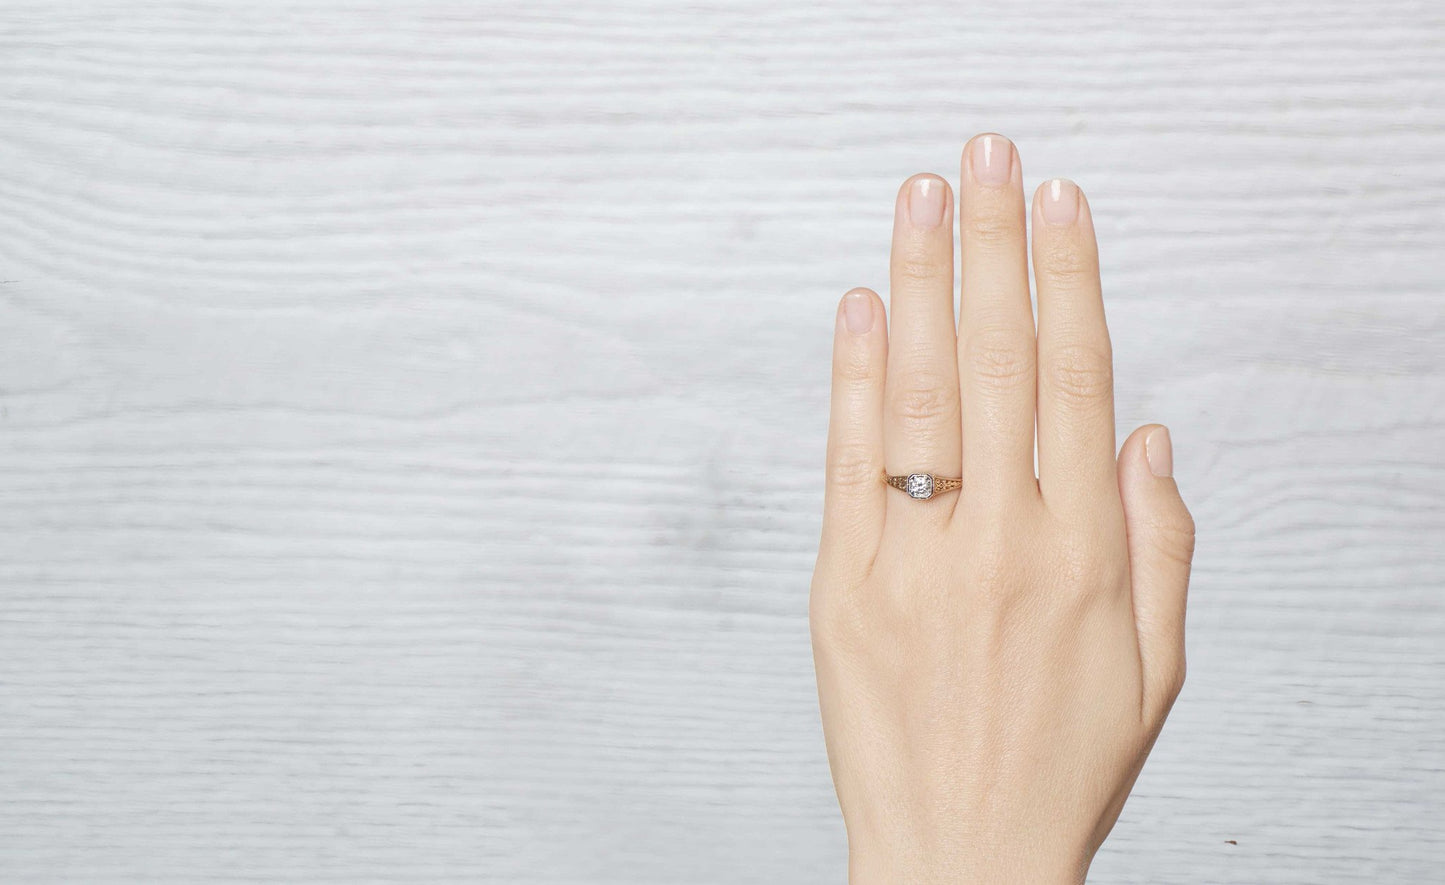 .25 Carat Tiffany & Co. Edwardian Engagement Ring